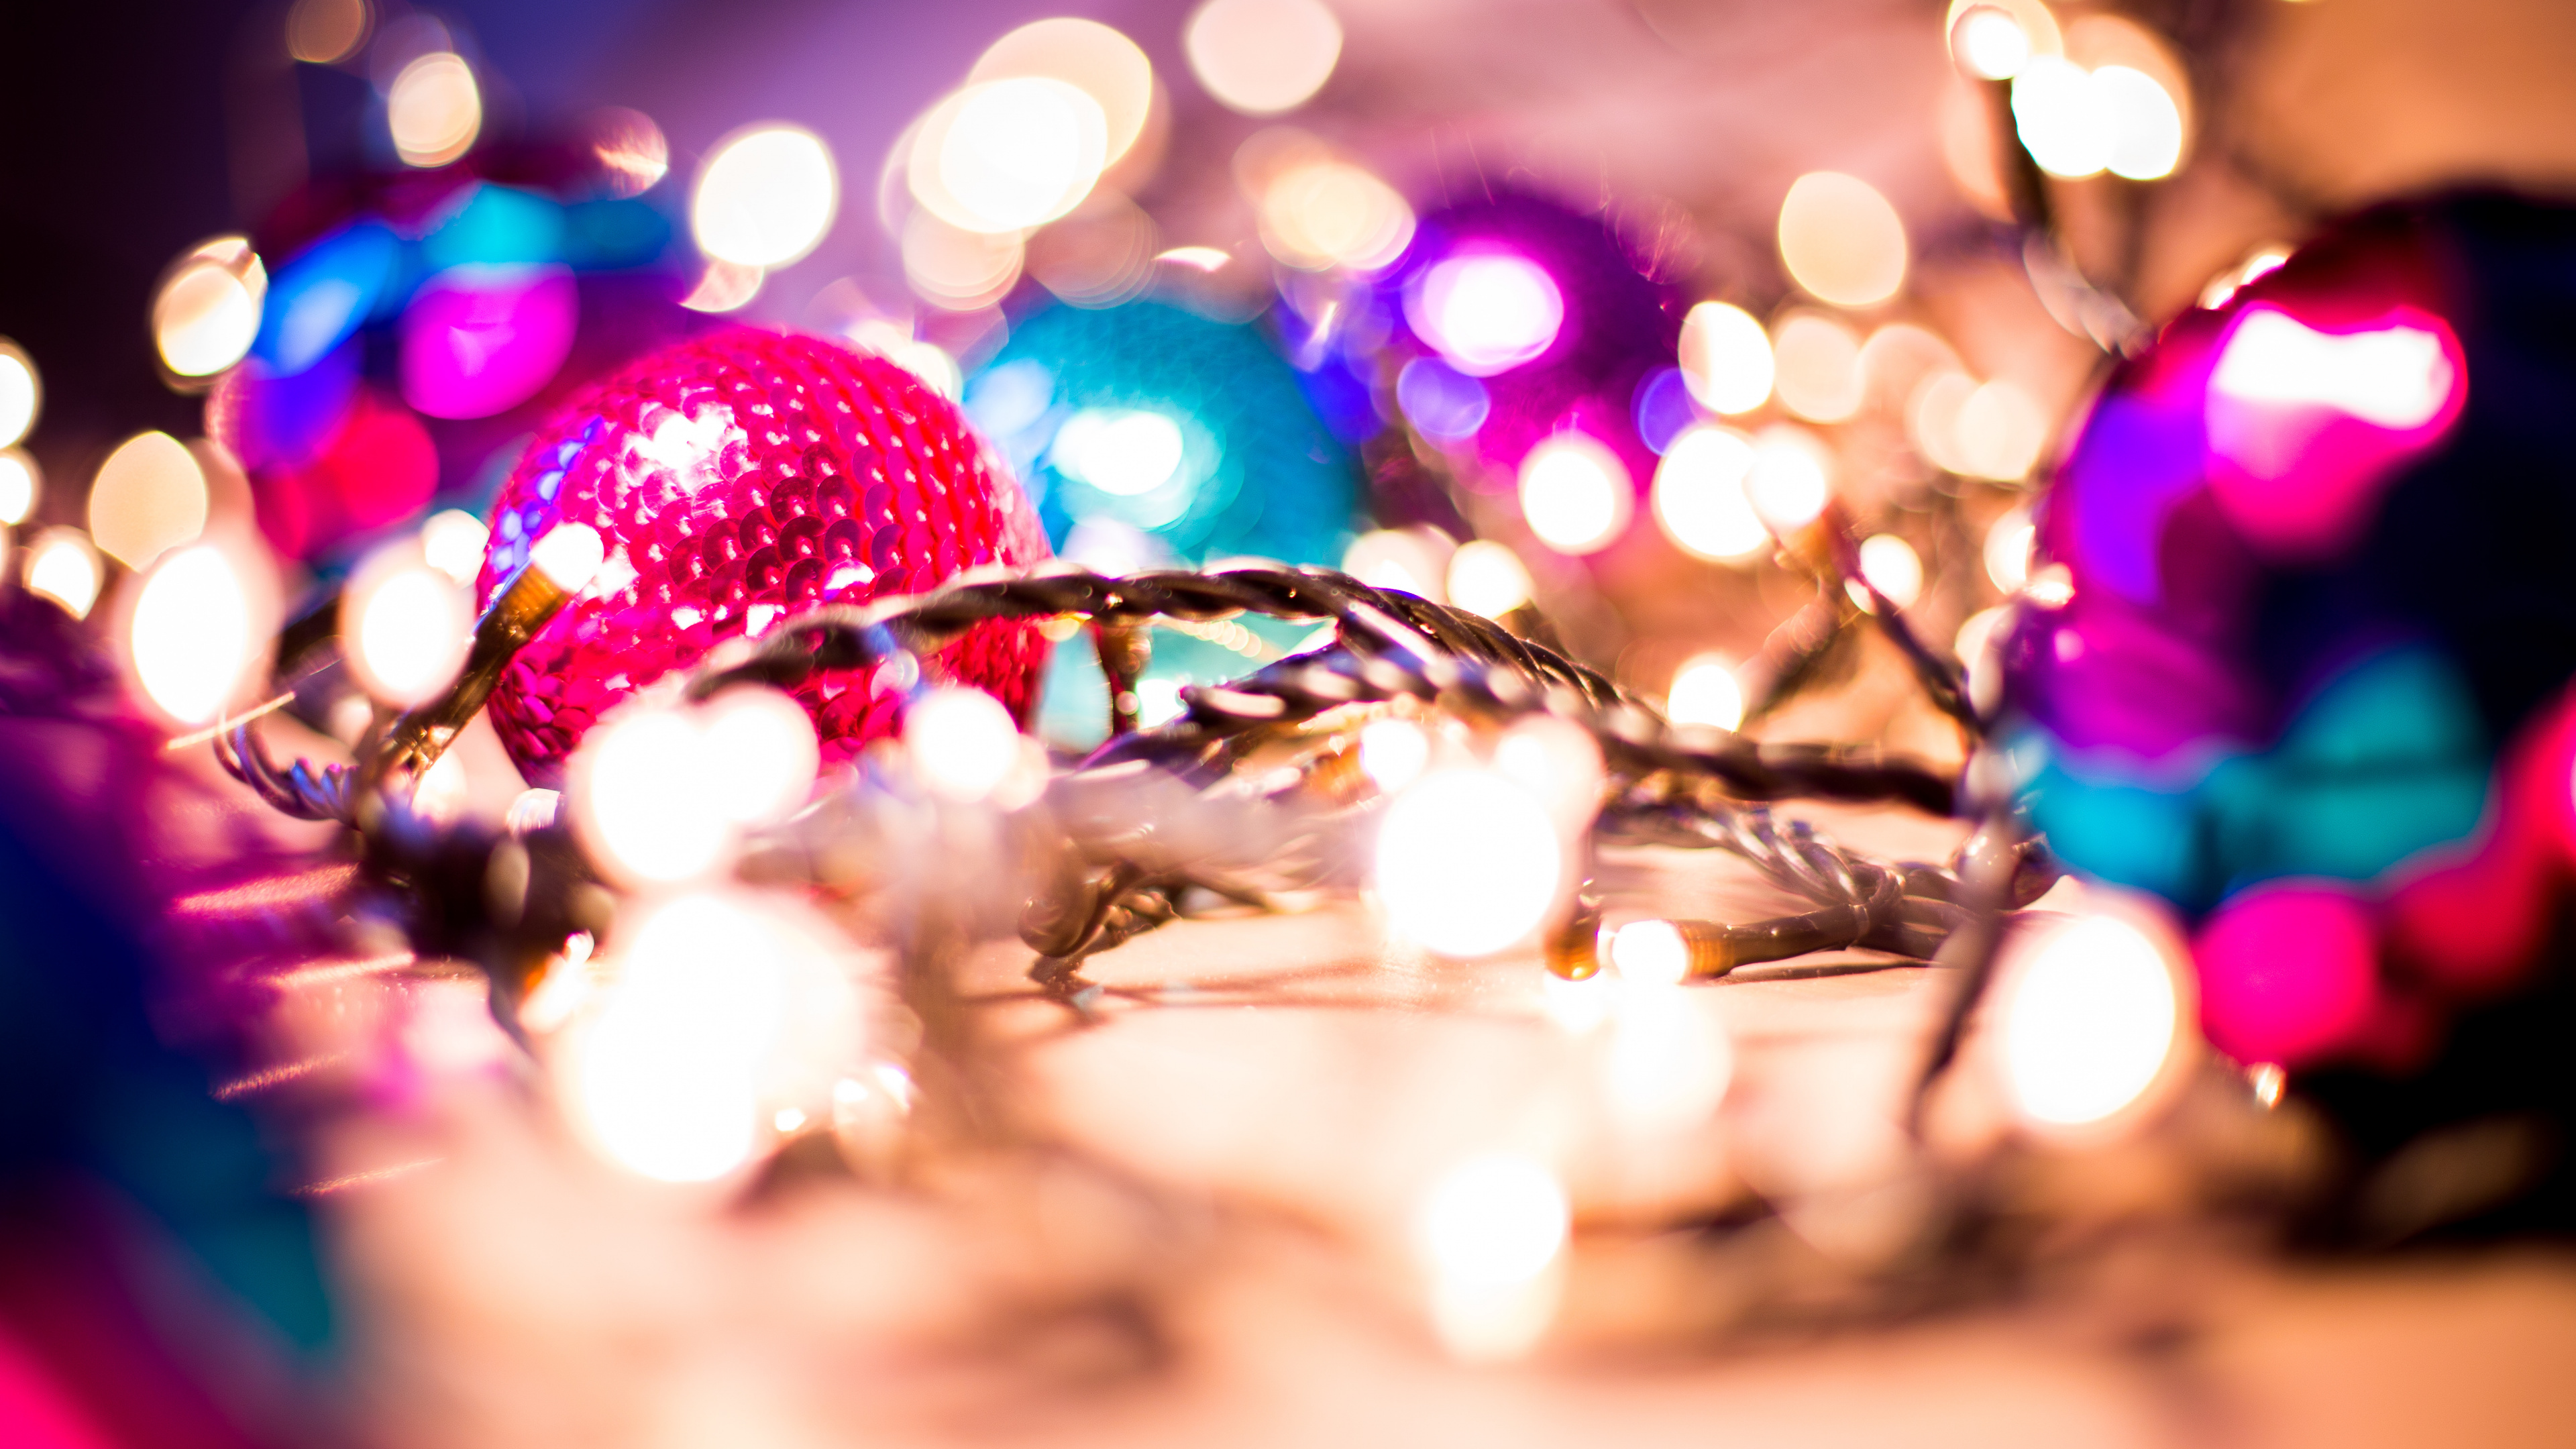 Weihnachten, Weihnachts-und Ferienzeit, Weihnachtsbeleuchtung, Pink, Licht. Wallpaper in 3840x2160 Resolution